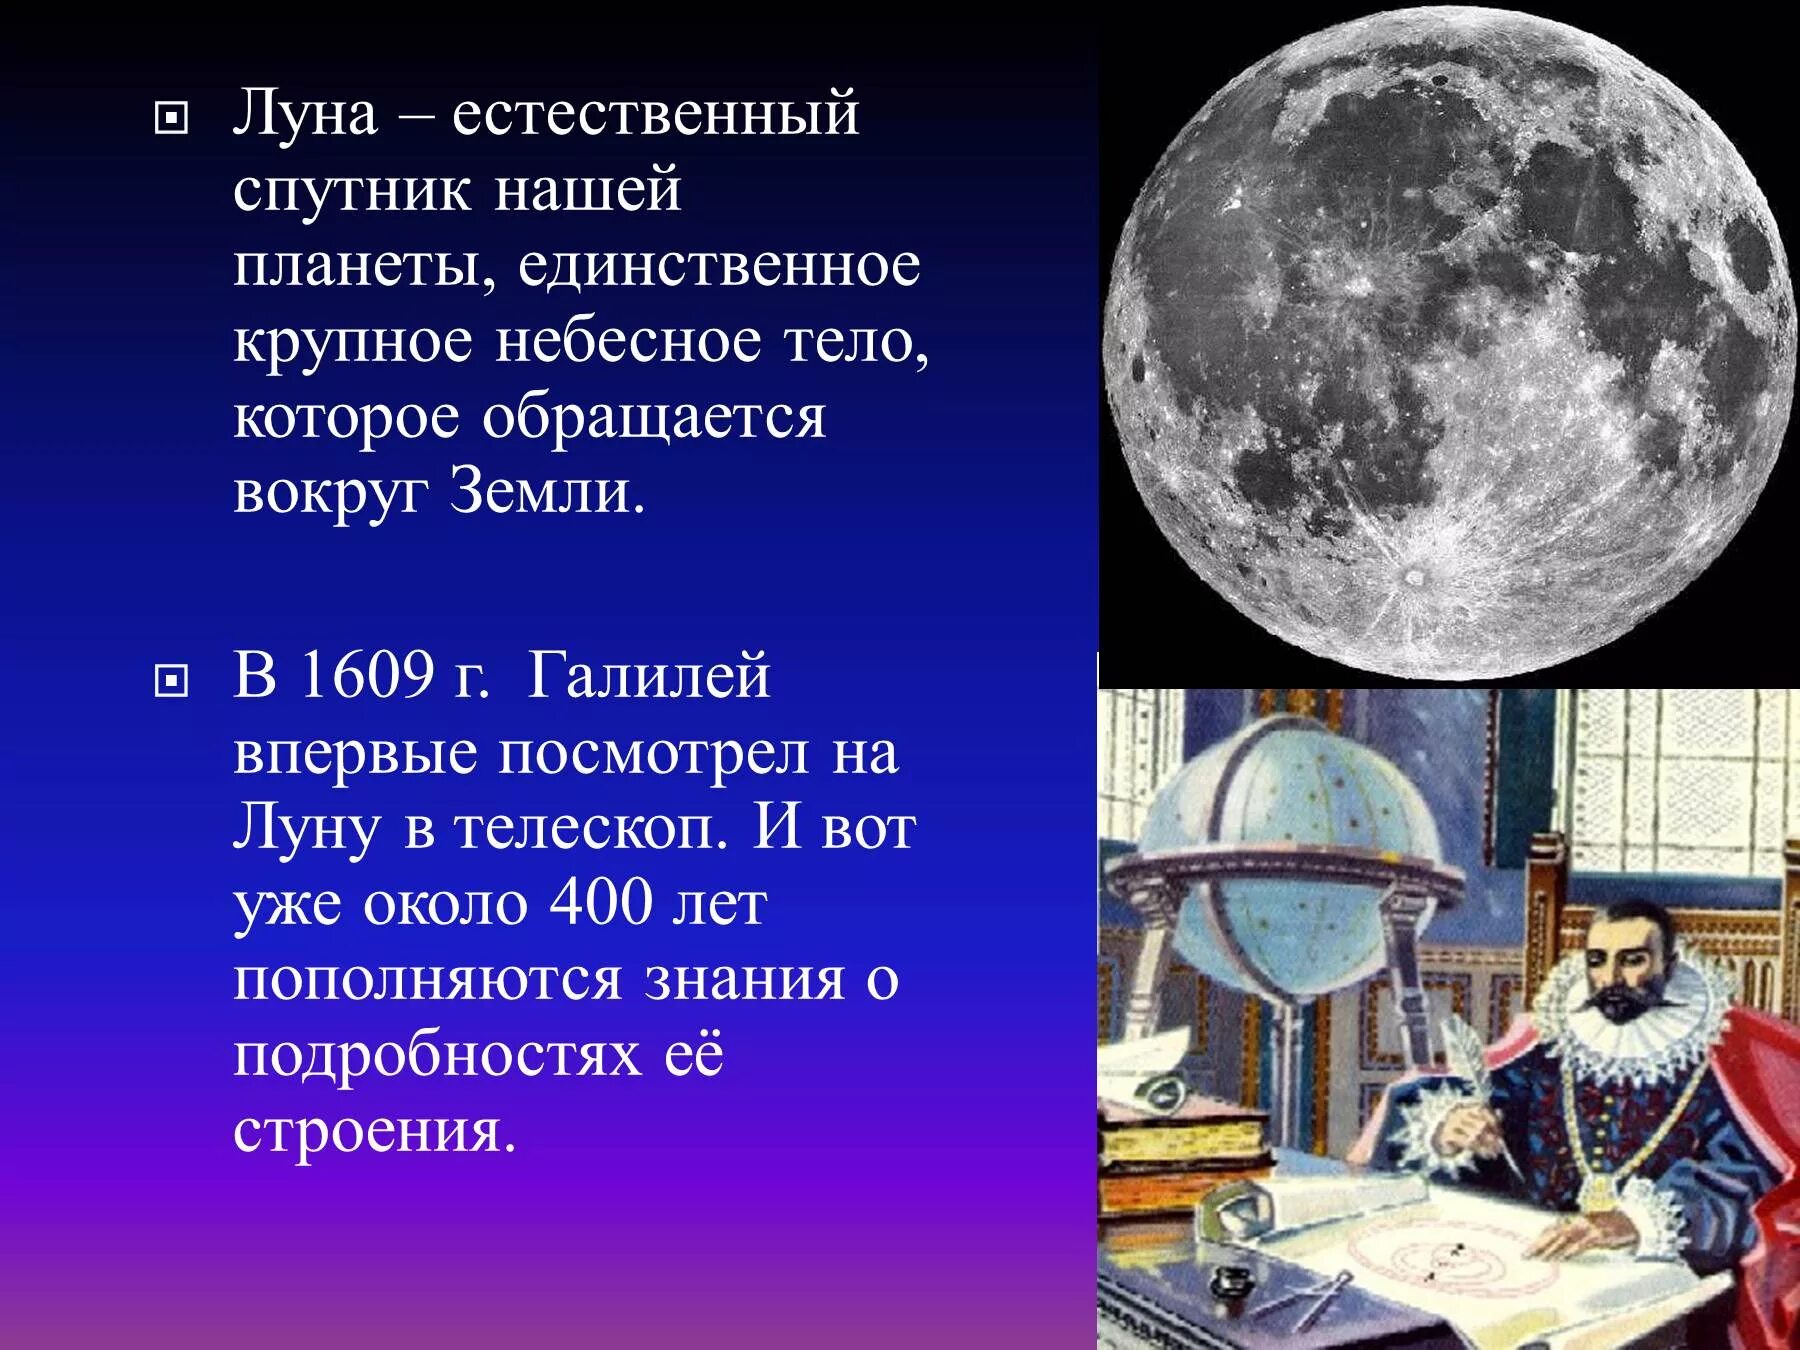 Спутник луна 4. Луна естественный Спутник земли. Луна для презентации. Общие сведения о Луне. Луна единственный естественный Спутник нашей планеты.